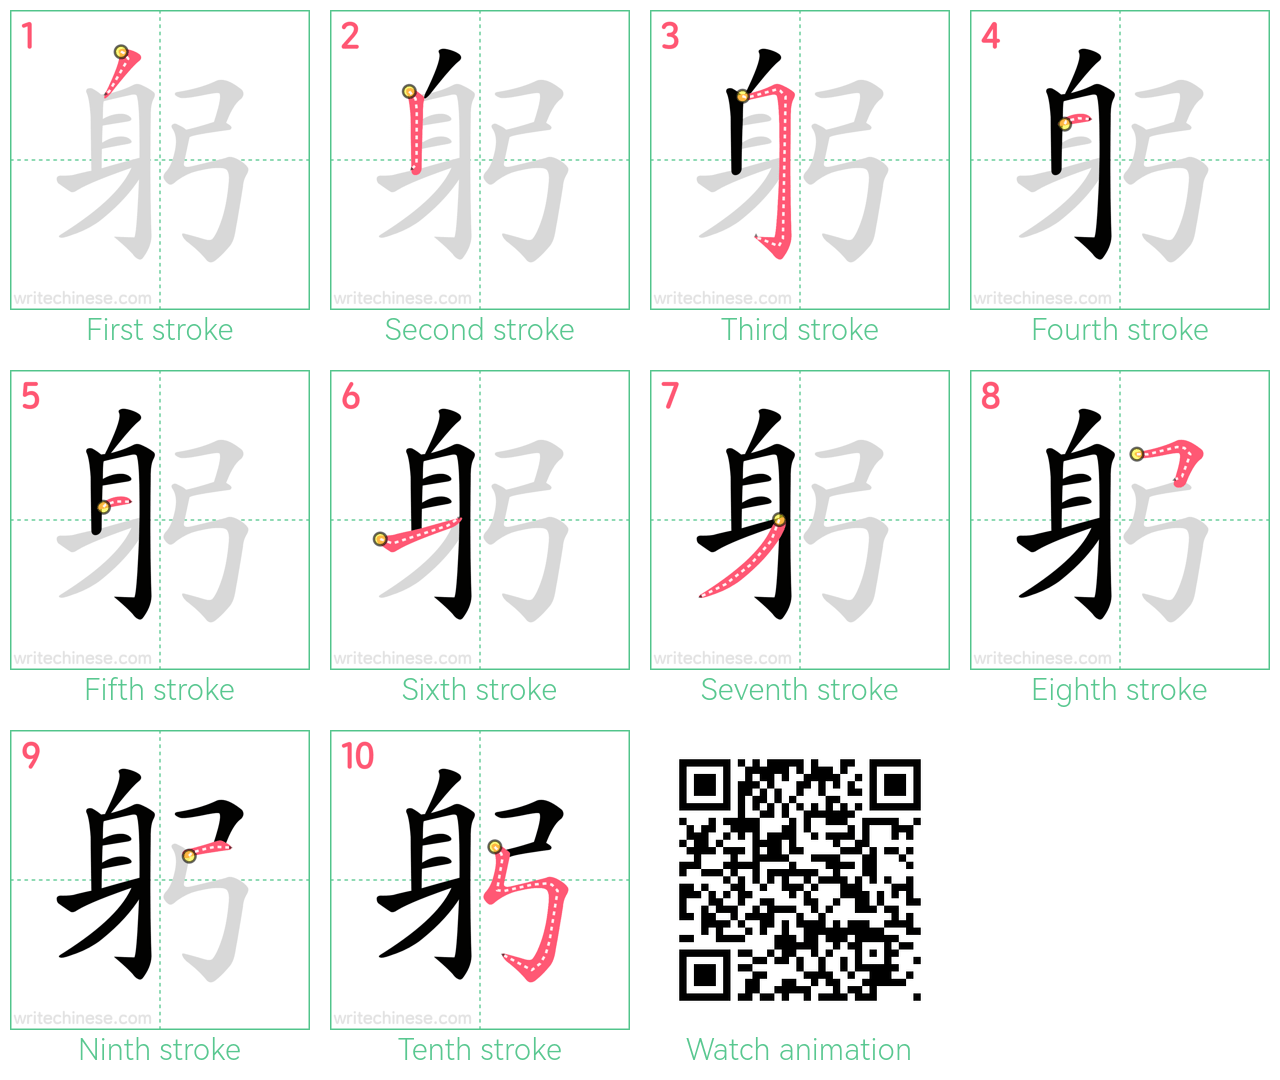 躬 step-by-step stroke order diagrams